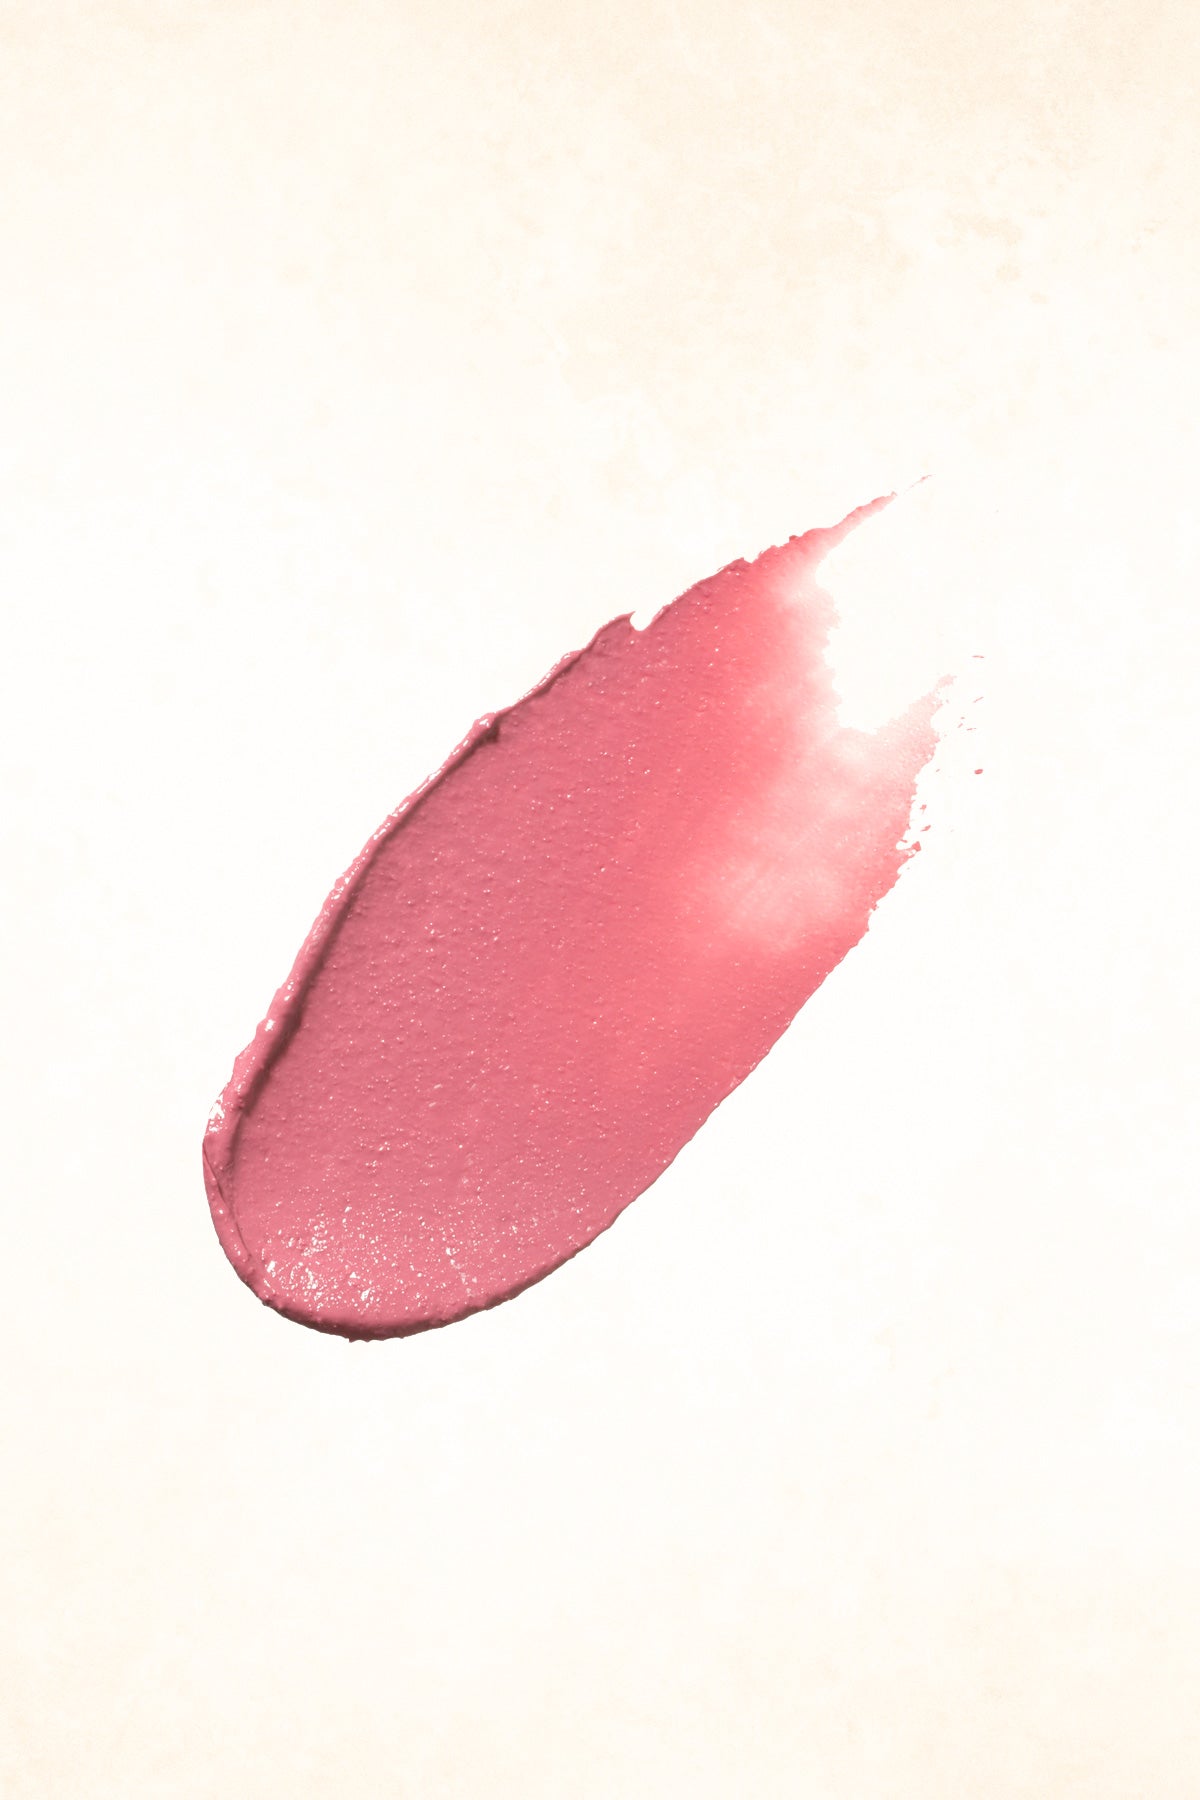 ILIA – Blossom Lady – Tinted Lip Conditioner